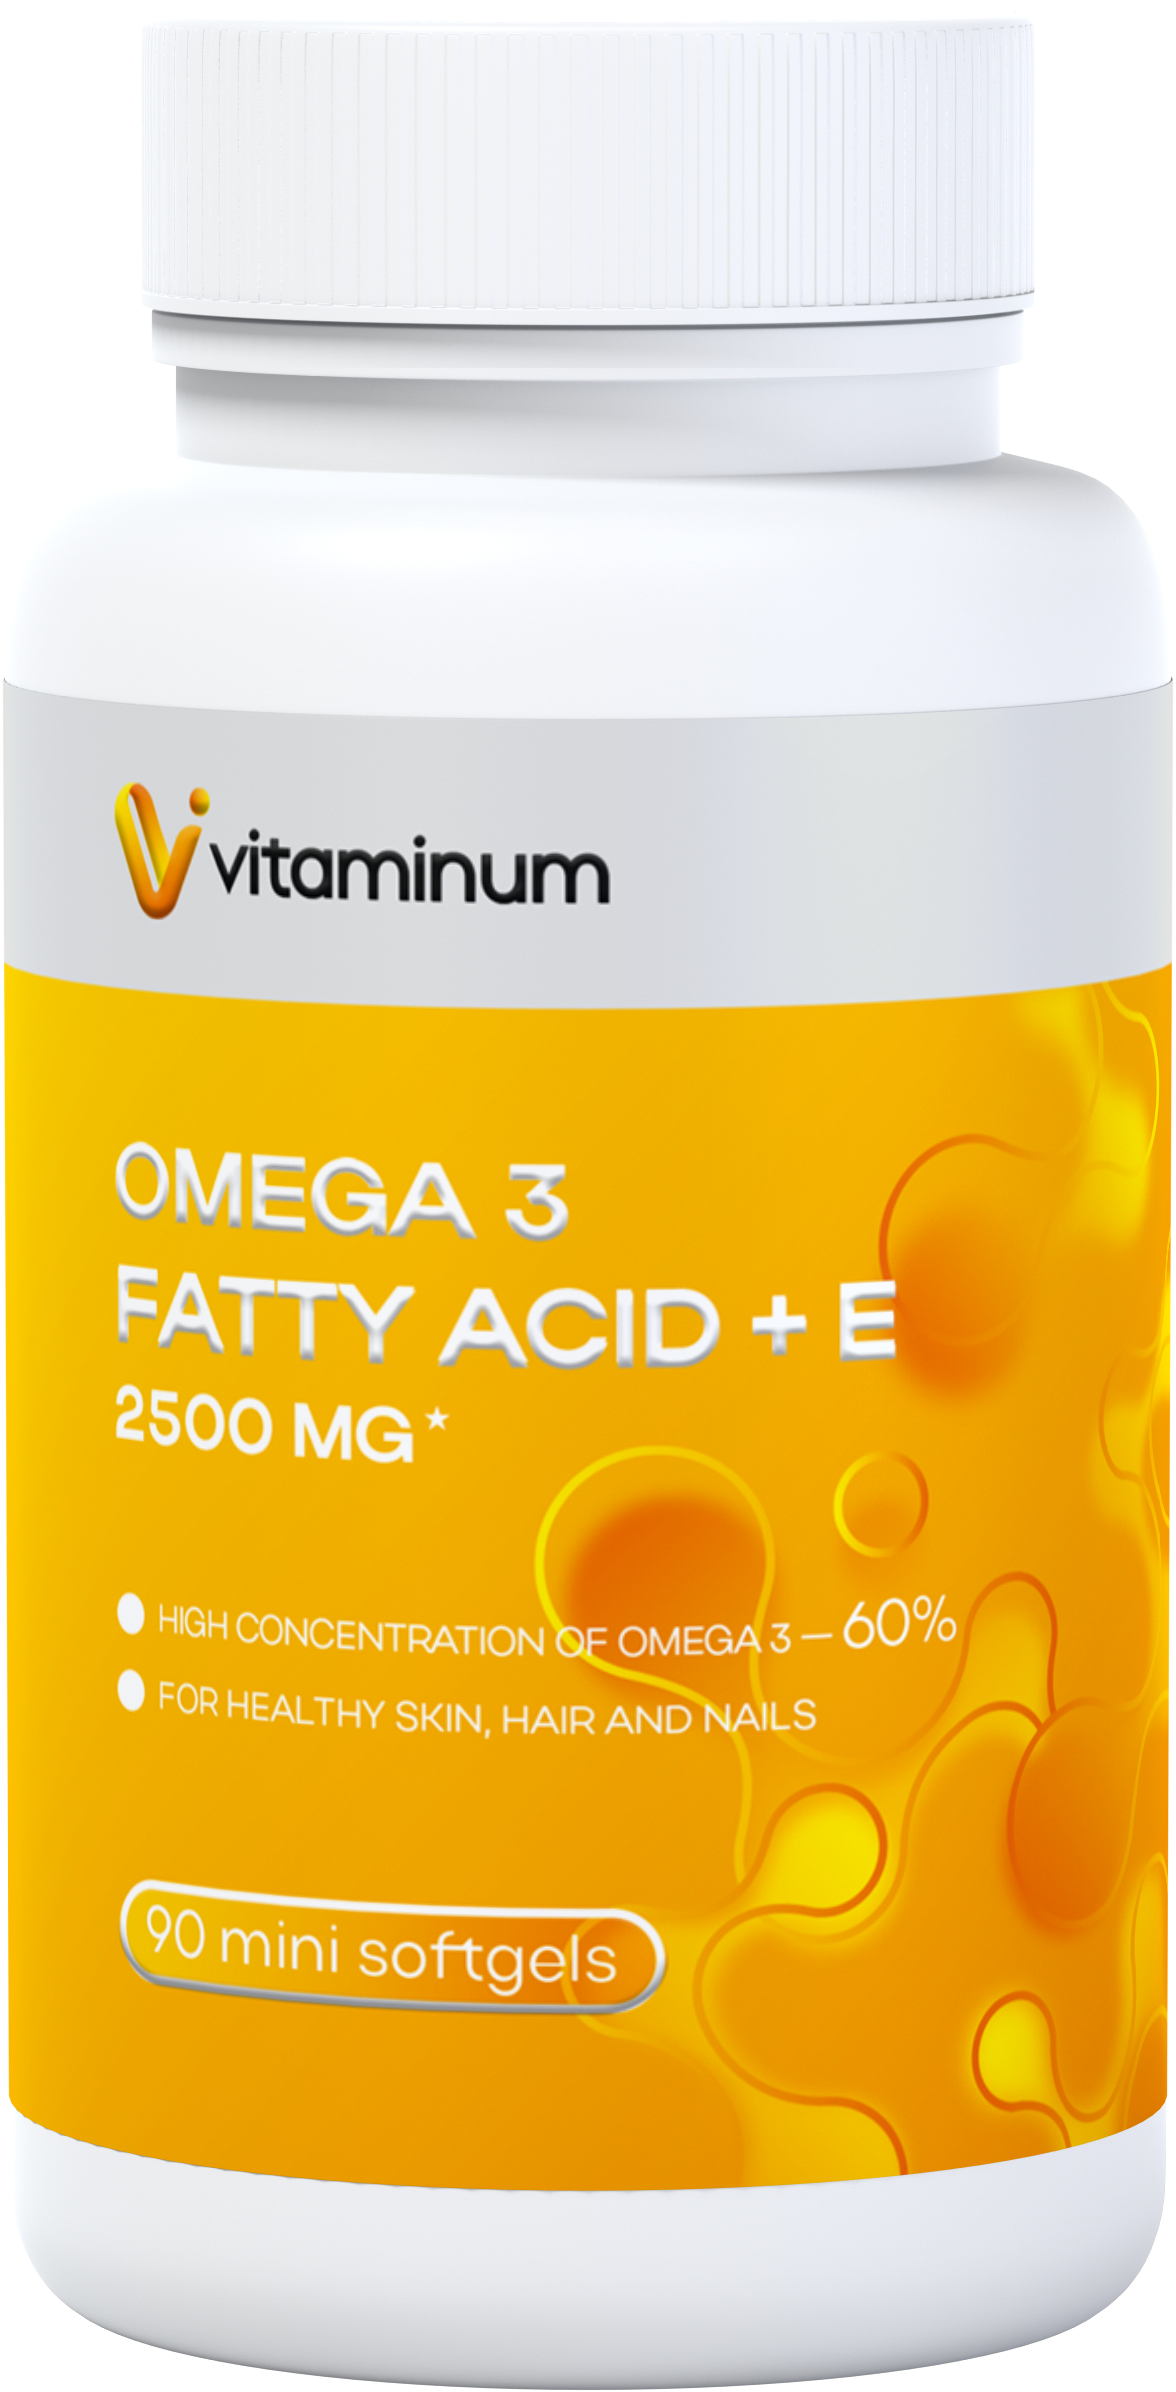  Vitaminum ОМЕГА 3 60% + витамин Е (2500 MG*) 90 капсул 700 мг   в Курске